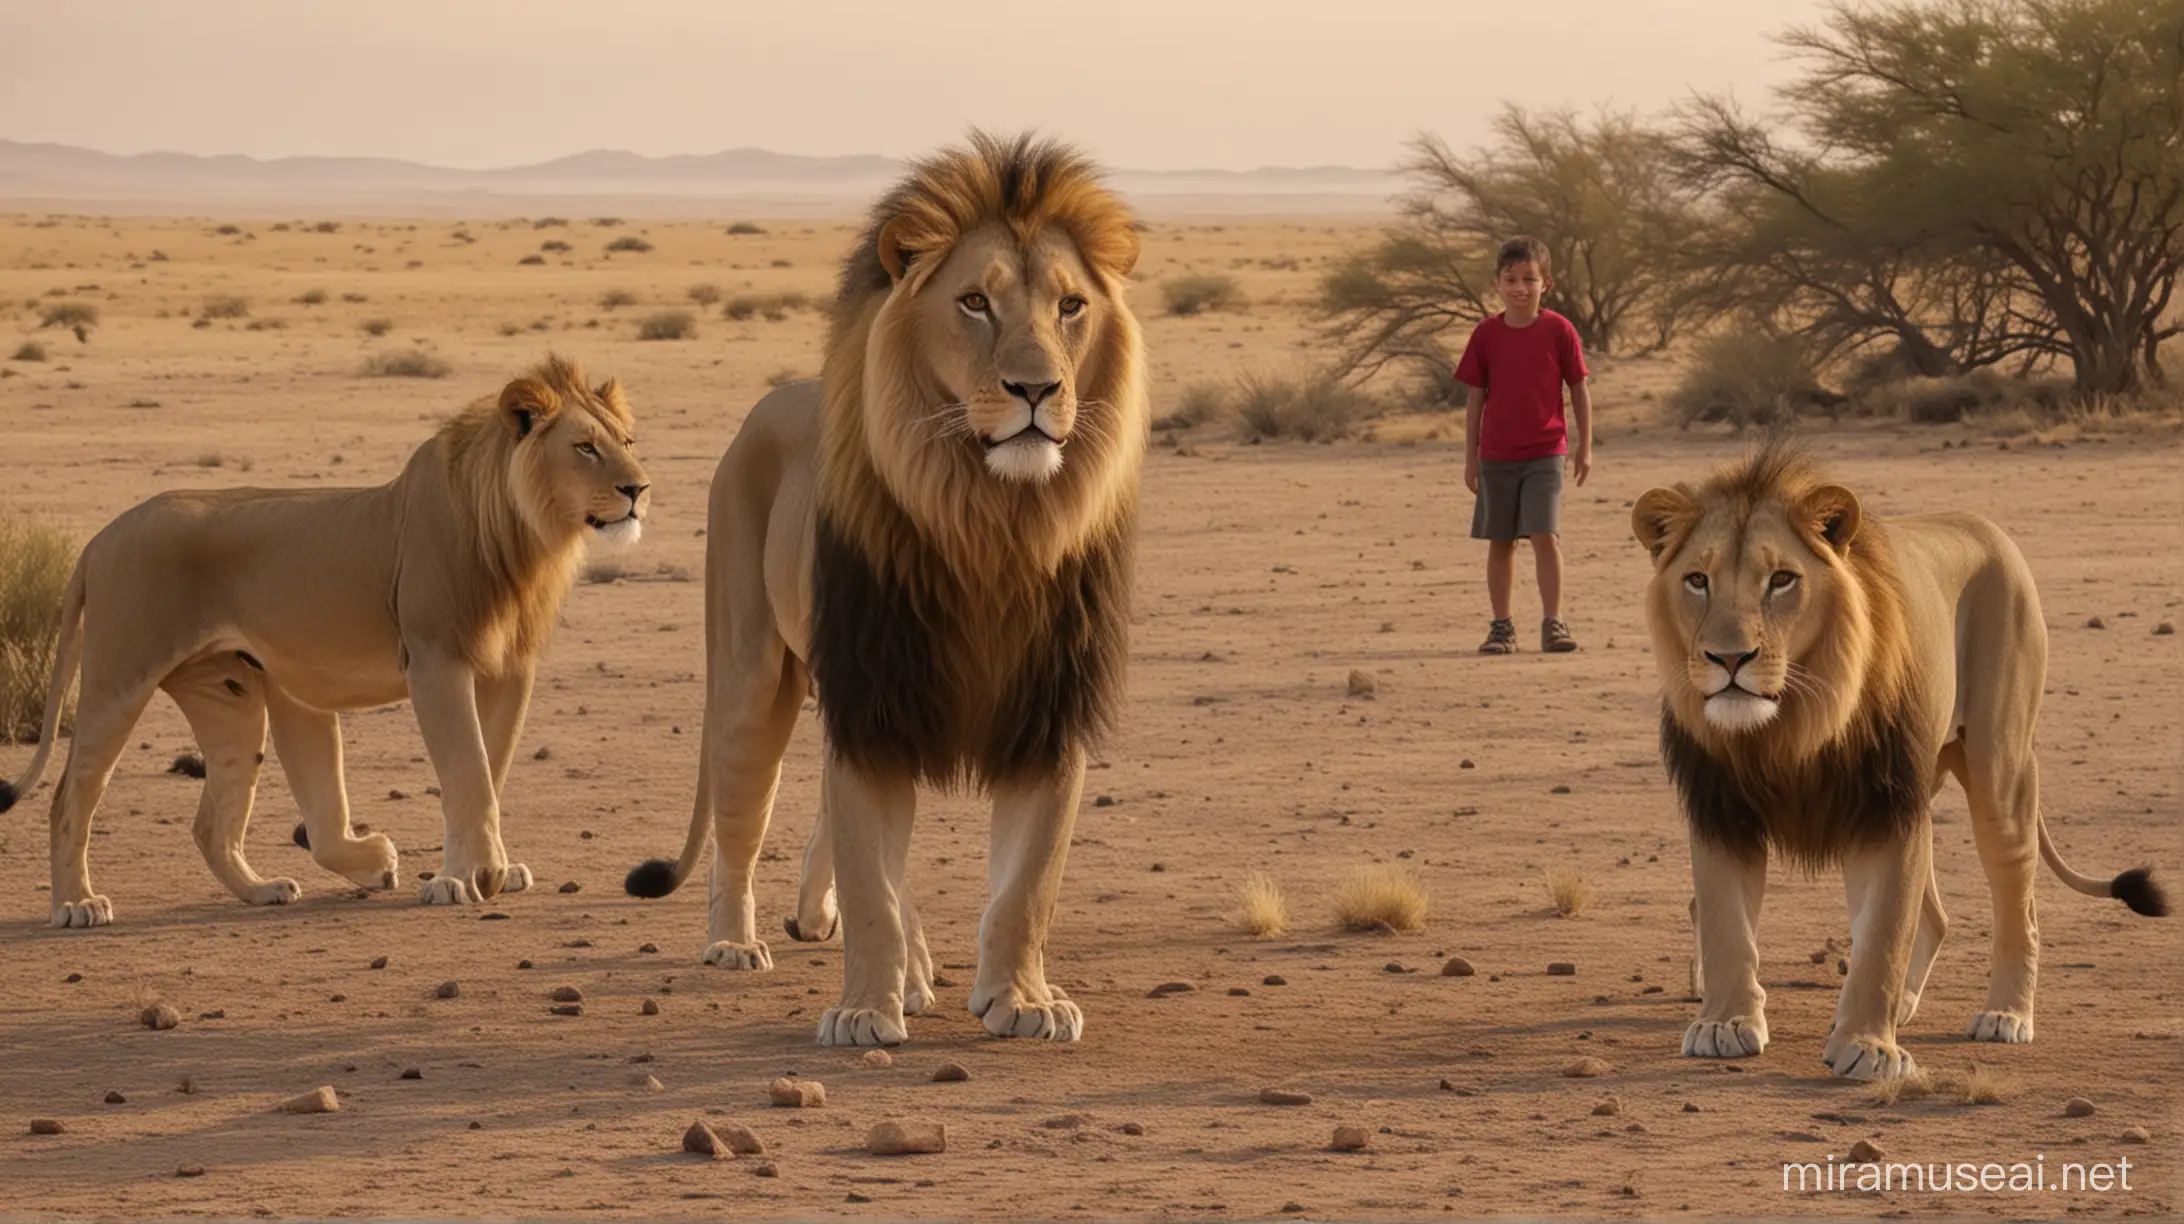 Daniel y los leones